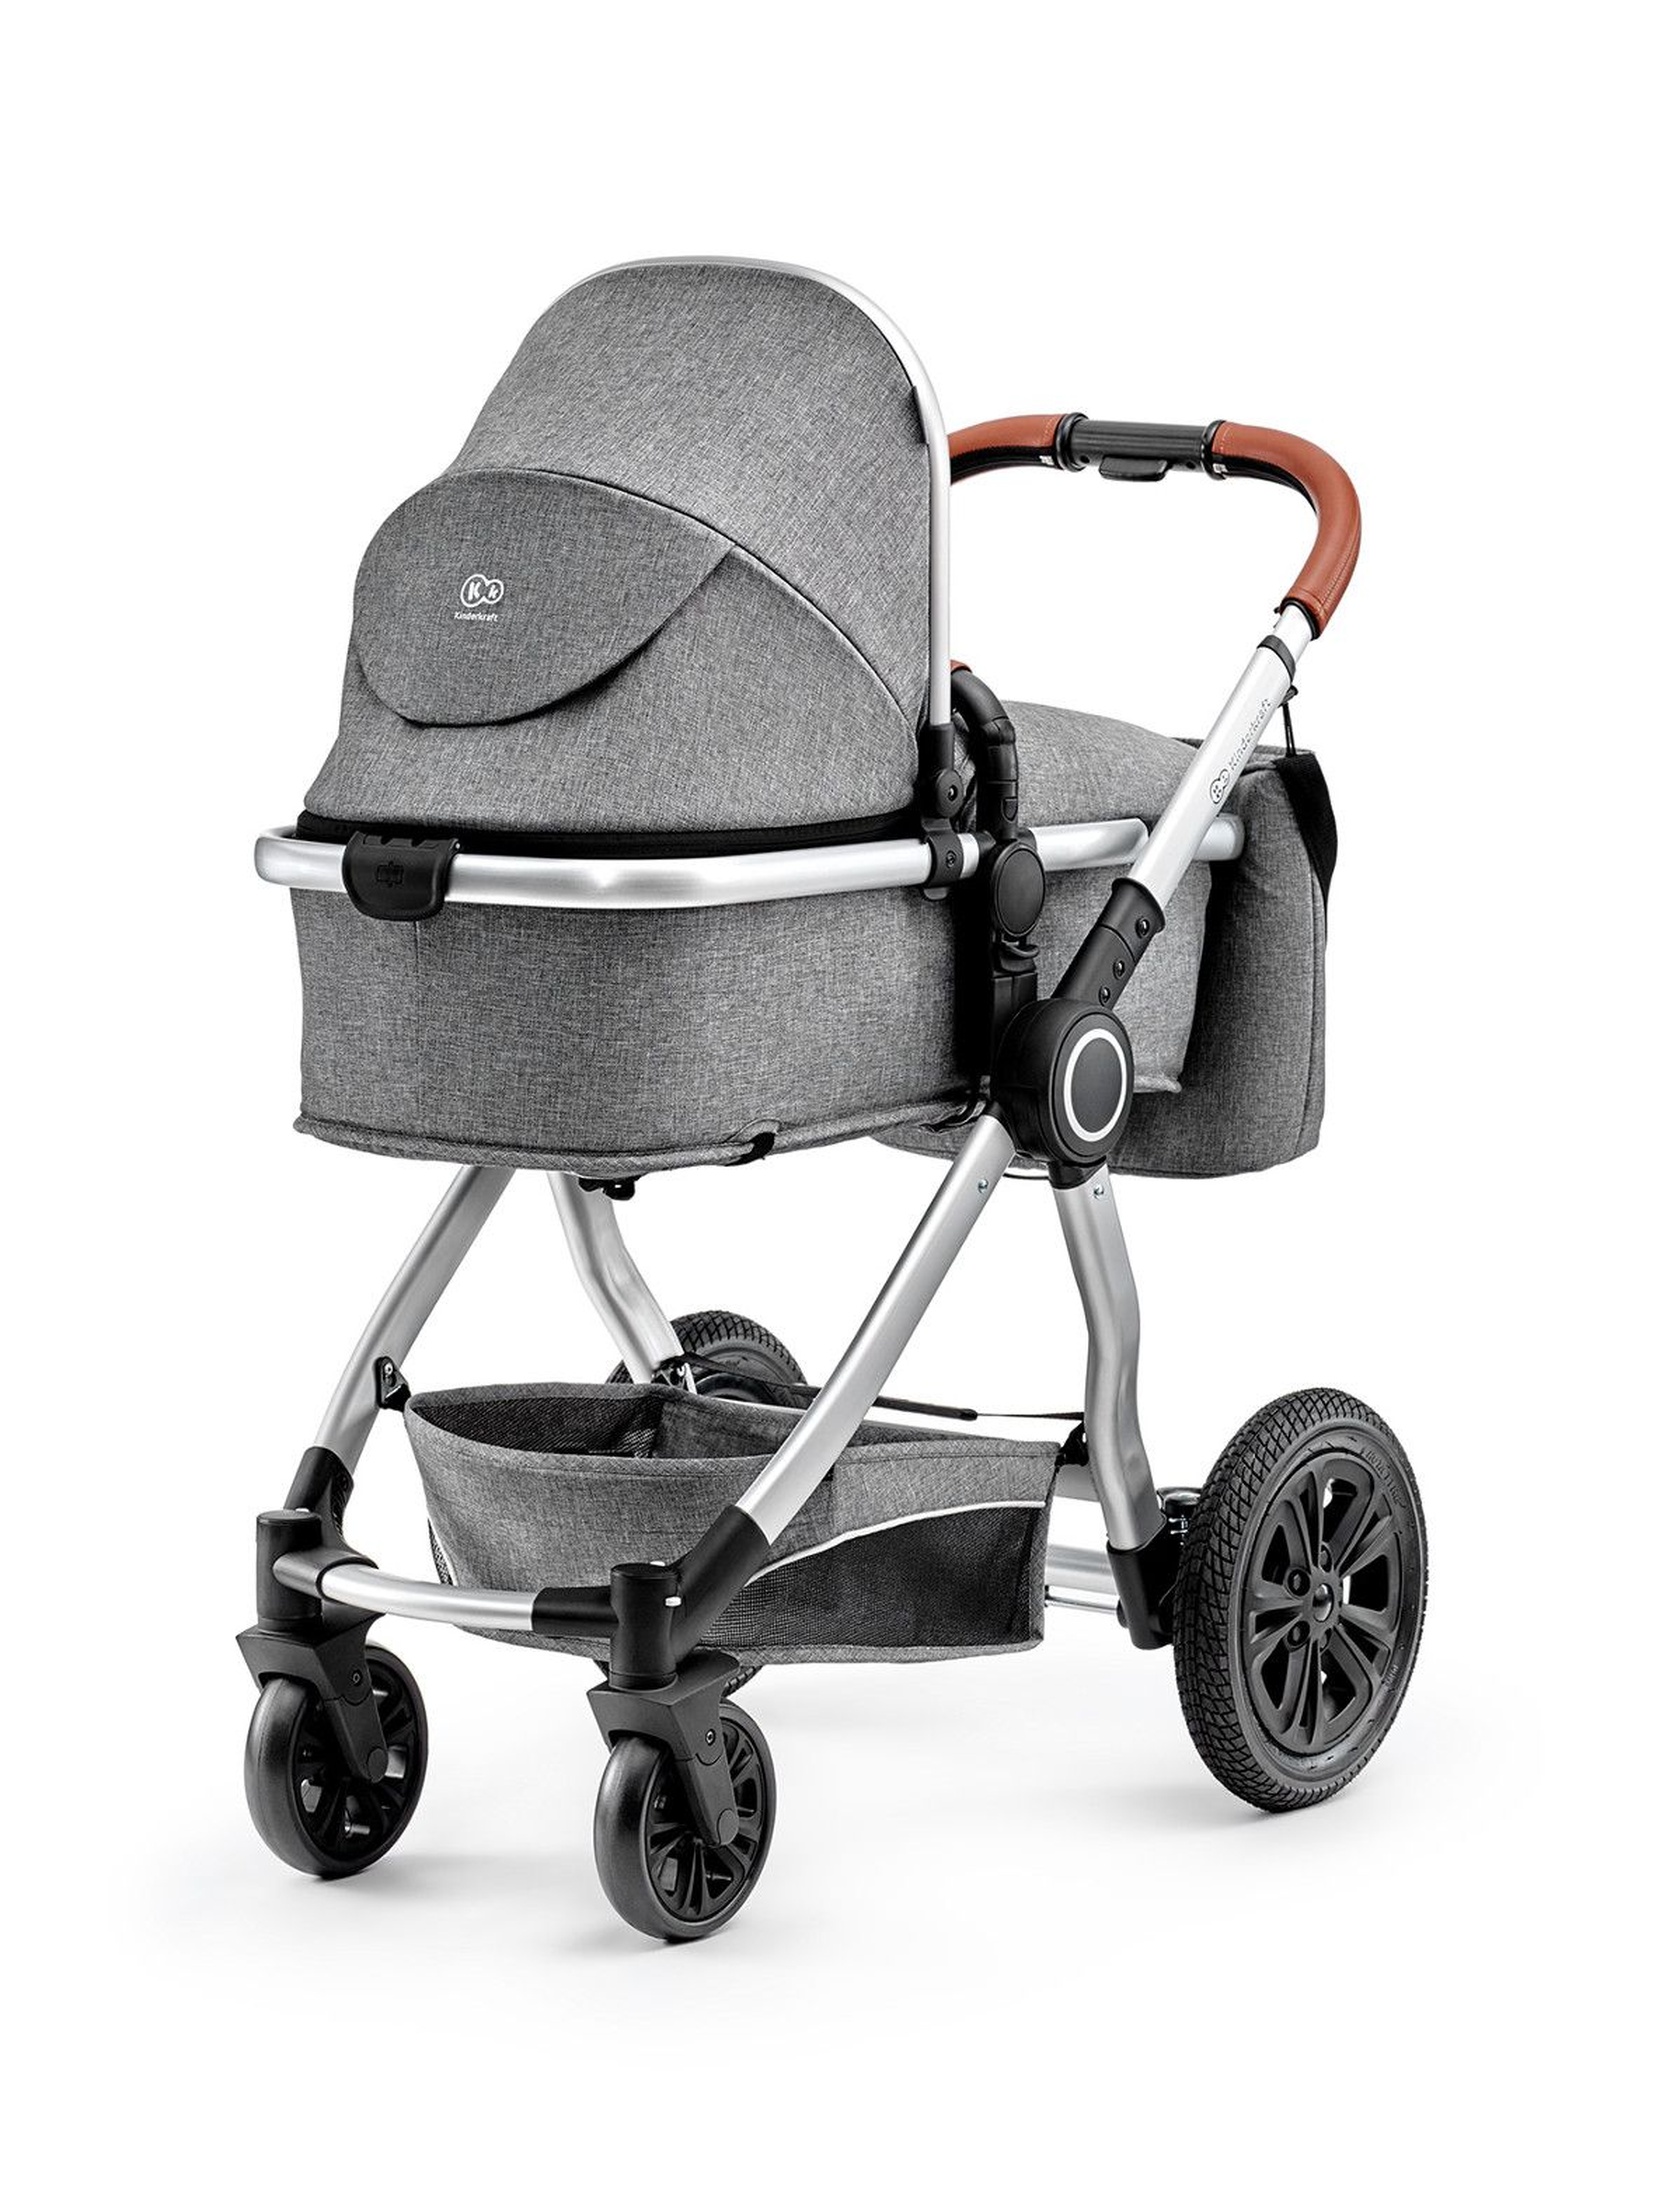 Wózek wielofunkcyjny dla dziecka 2w1 VEO KinderKraft